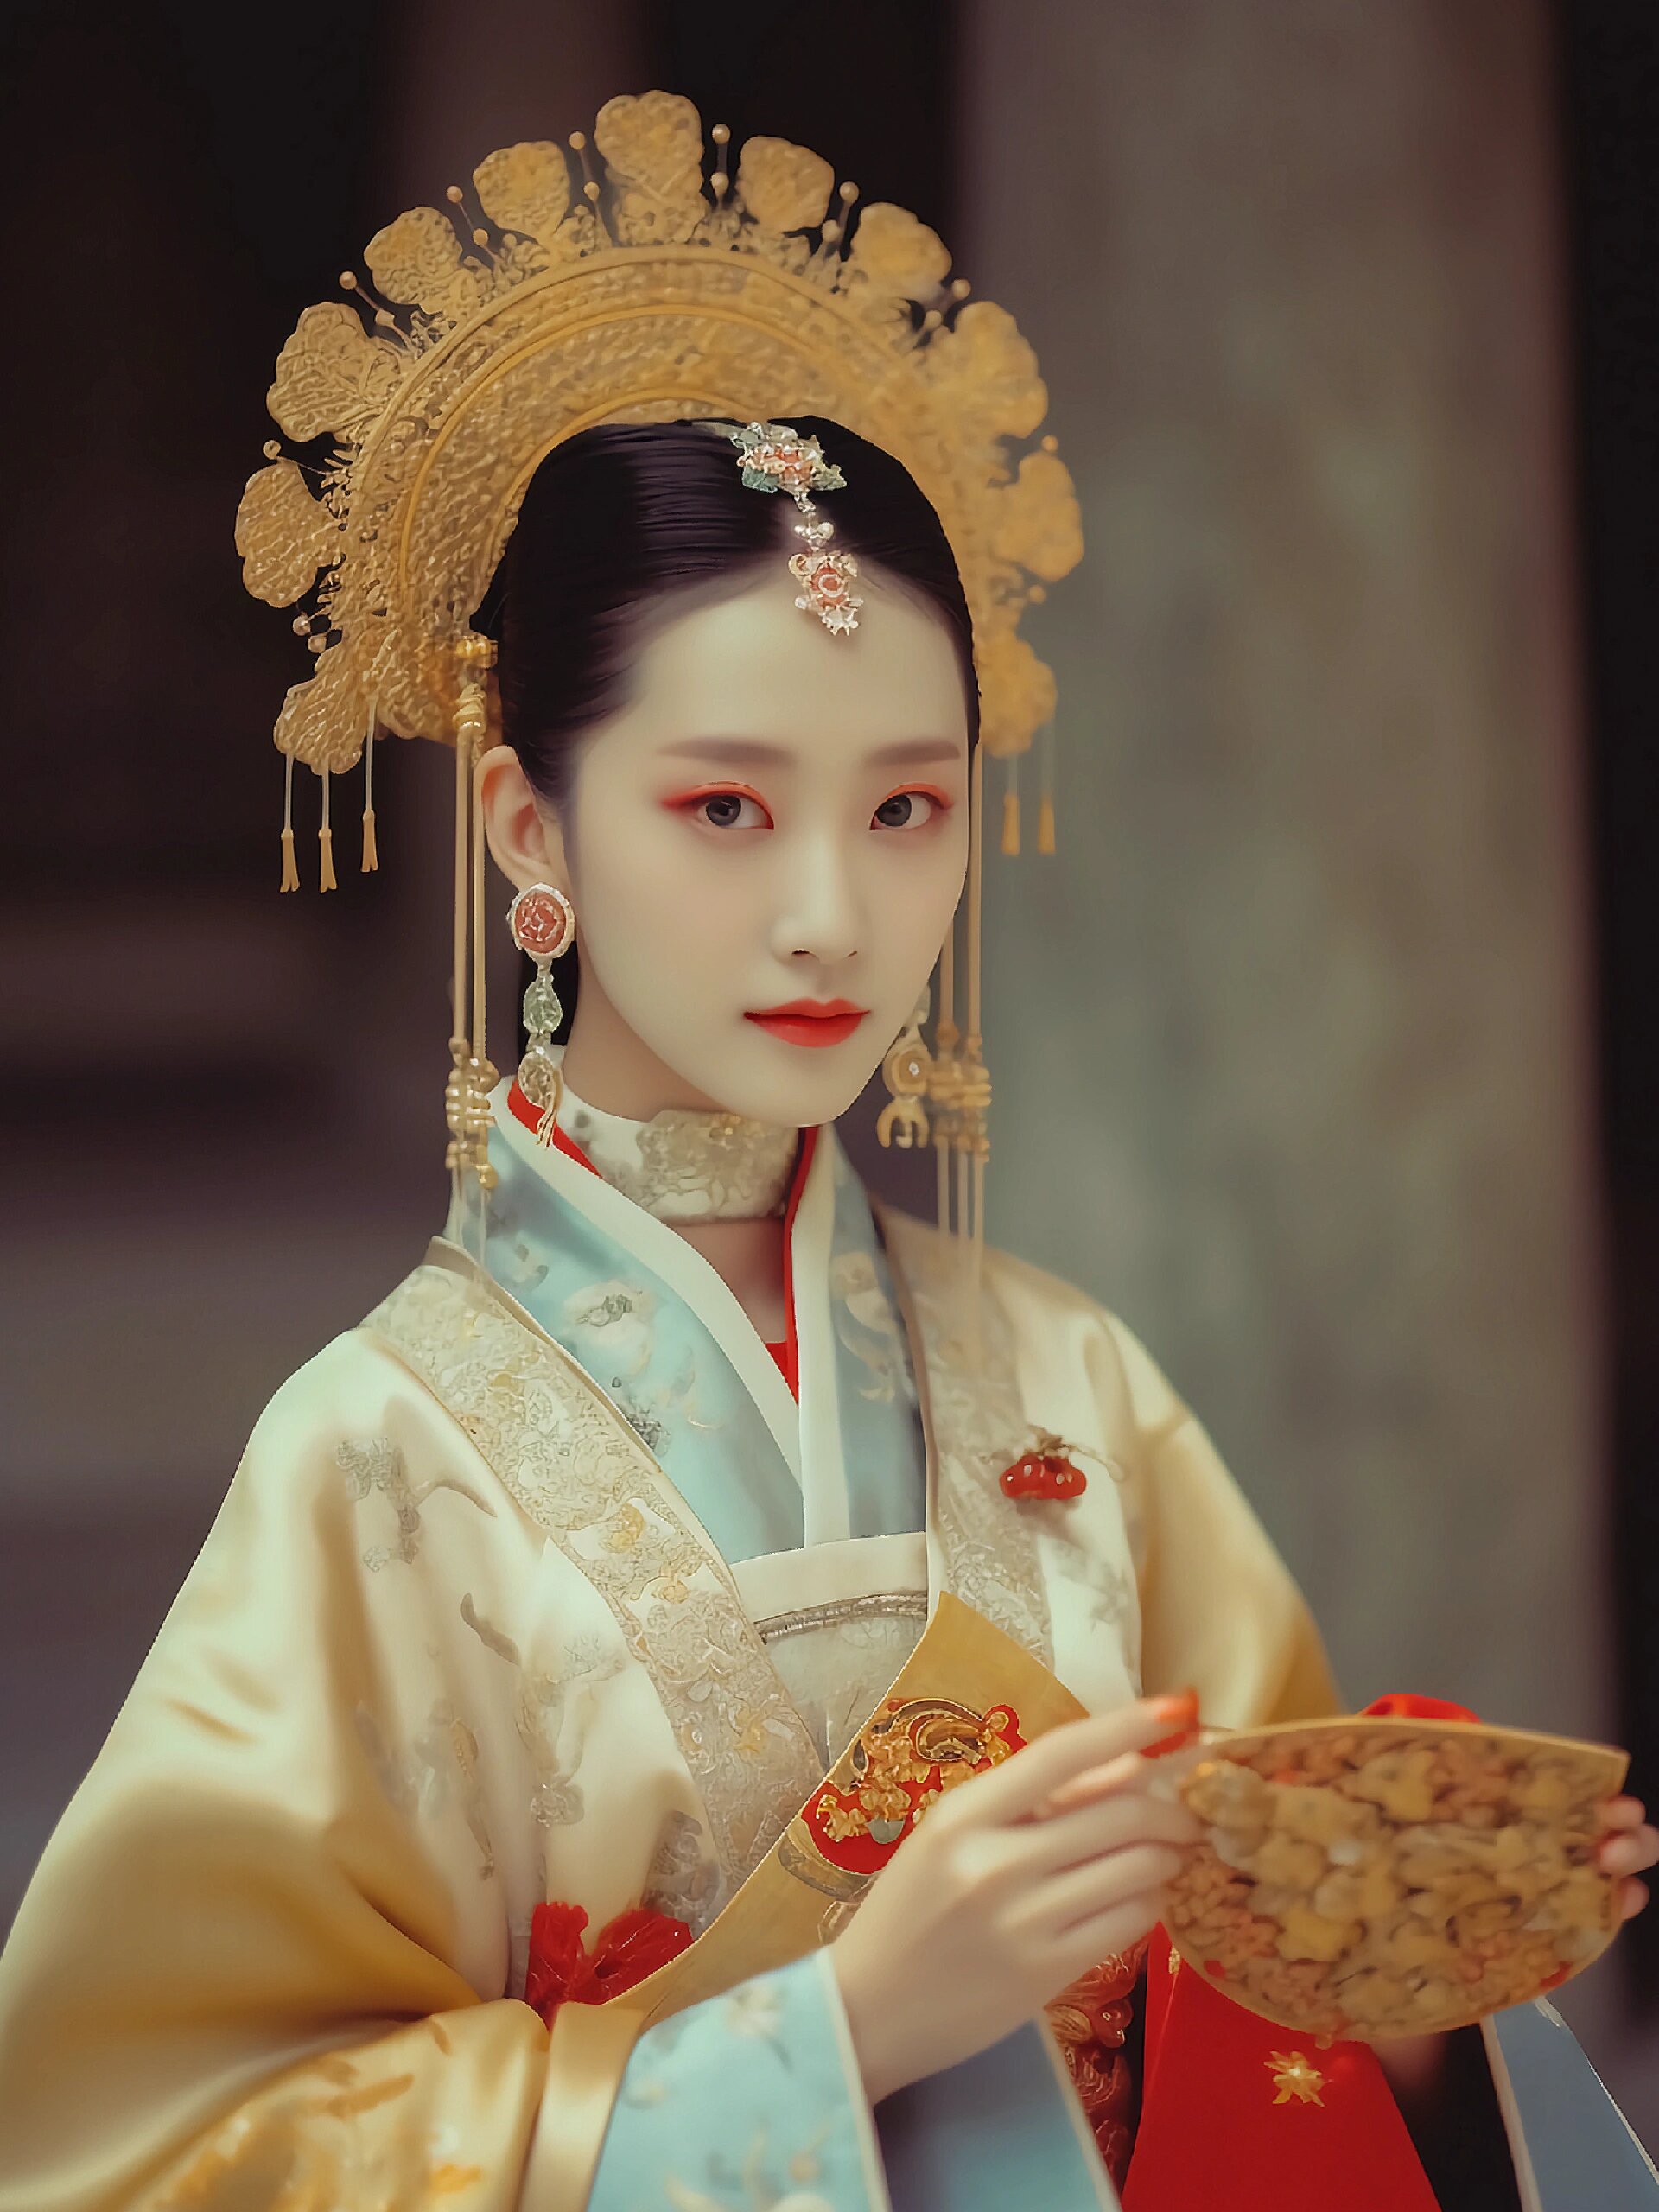 97锦绣华美,富丽堂皇的中国古代皇后服装 中国古代皇后的服装华丽